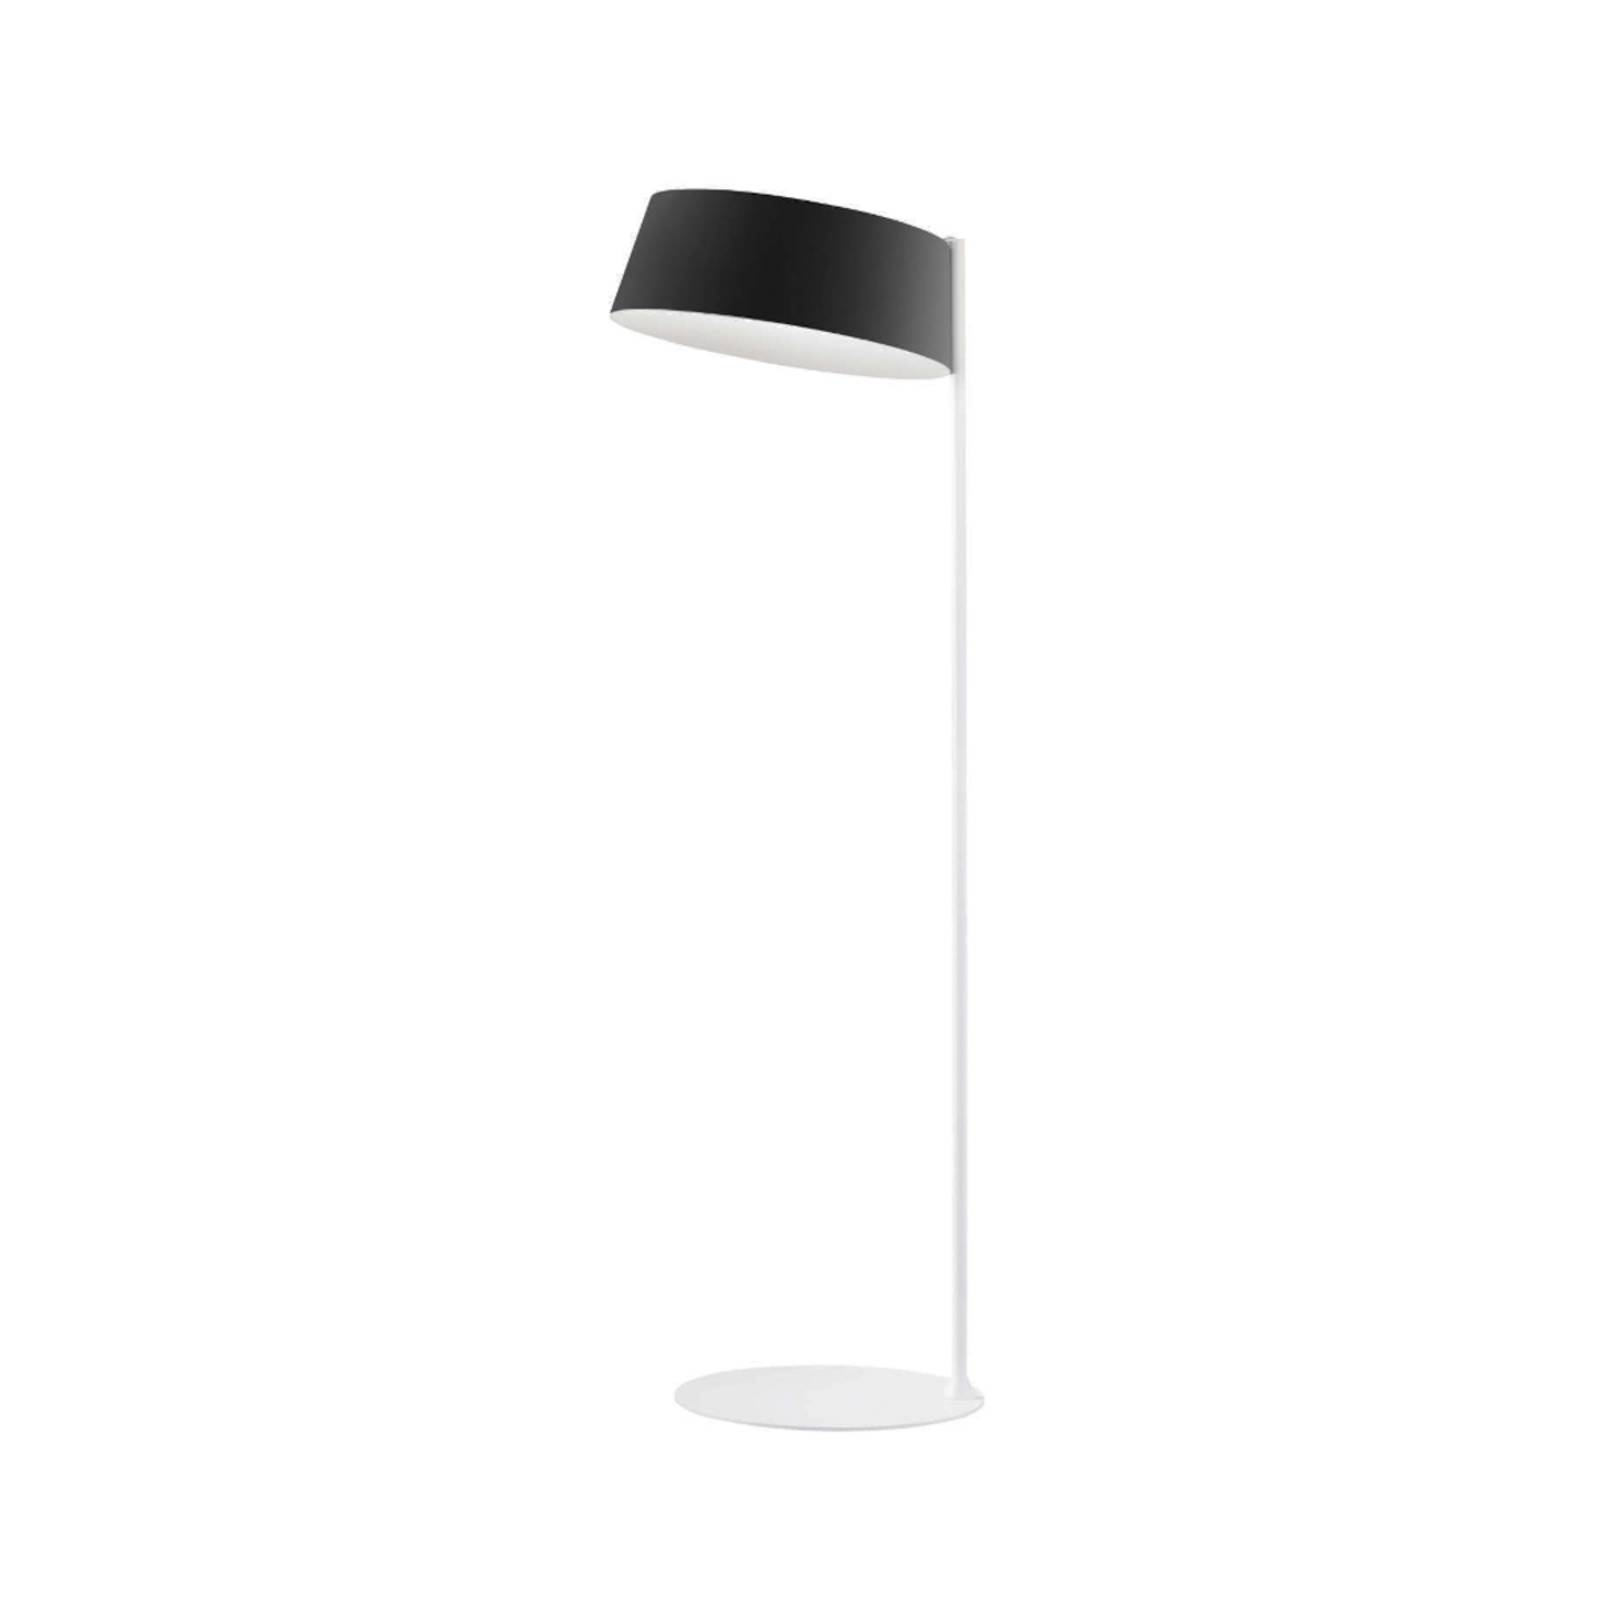 Stilnovo Oxygen FL2 stojacia LED lampa, čierna